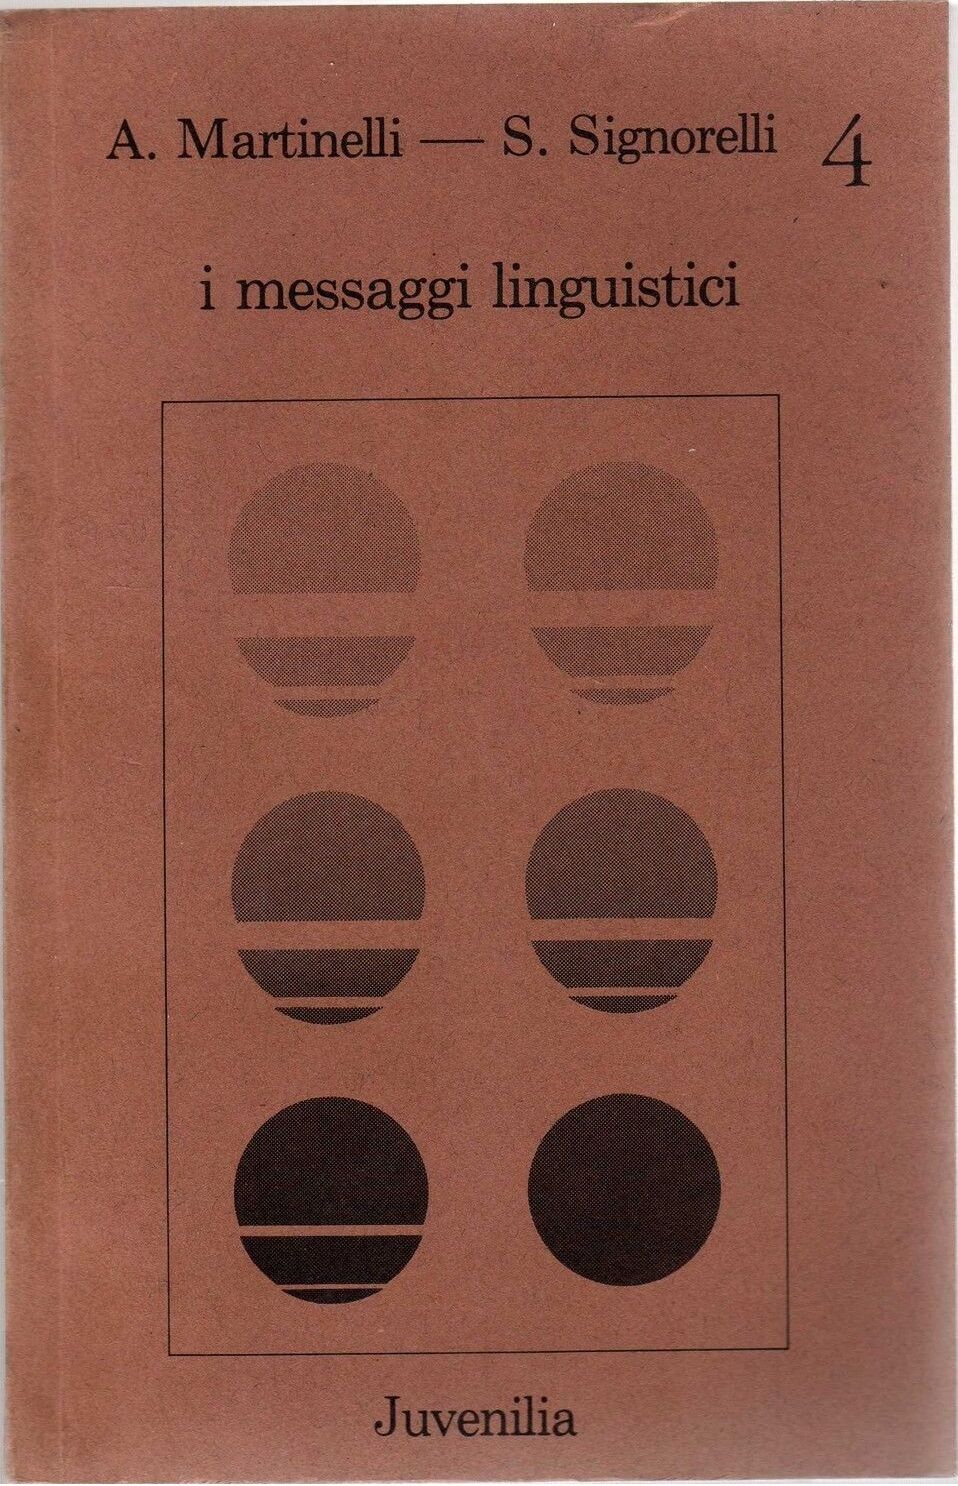 I messaggi linguistici - A. Martinelli - S. Signorelli,  1979,  Juvenilia 